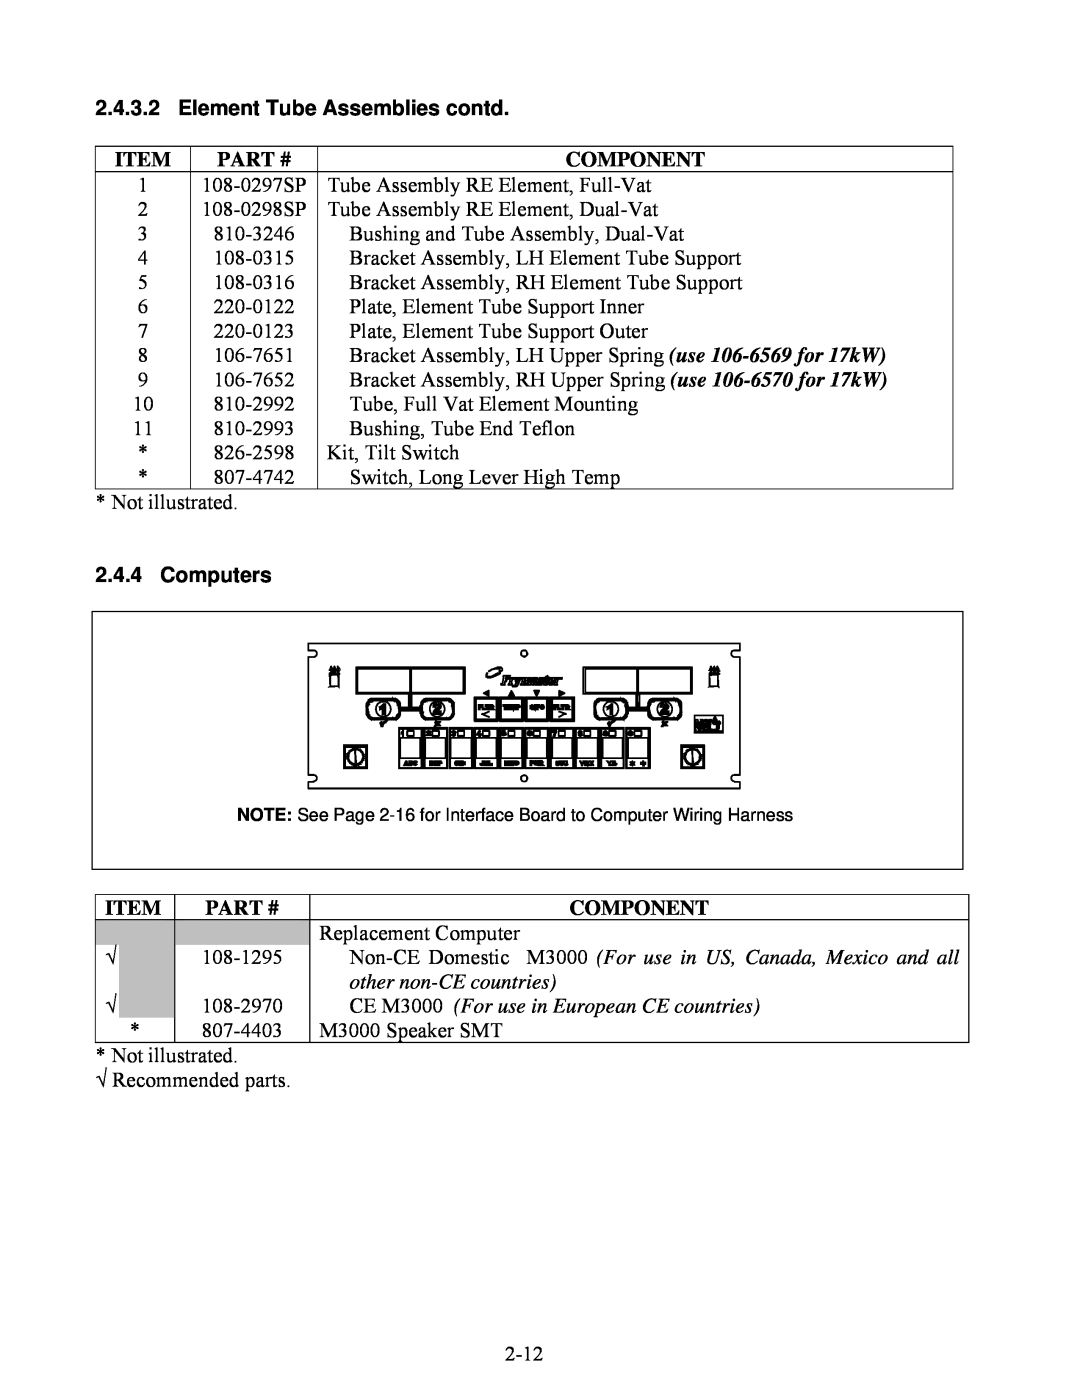 Frymaster BIELA14 manual Element Tube Assemblies contd, 2.4.4, Computers, Item, Part #, Component 